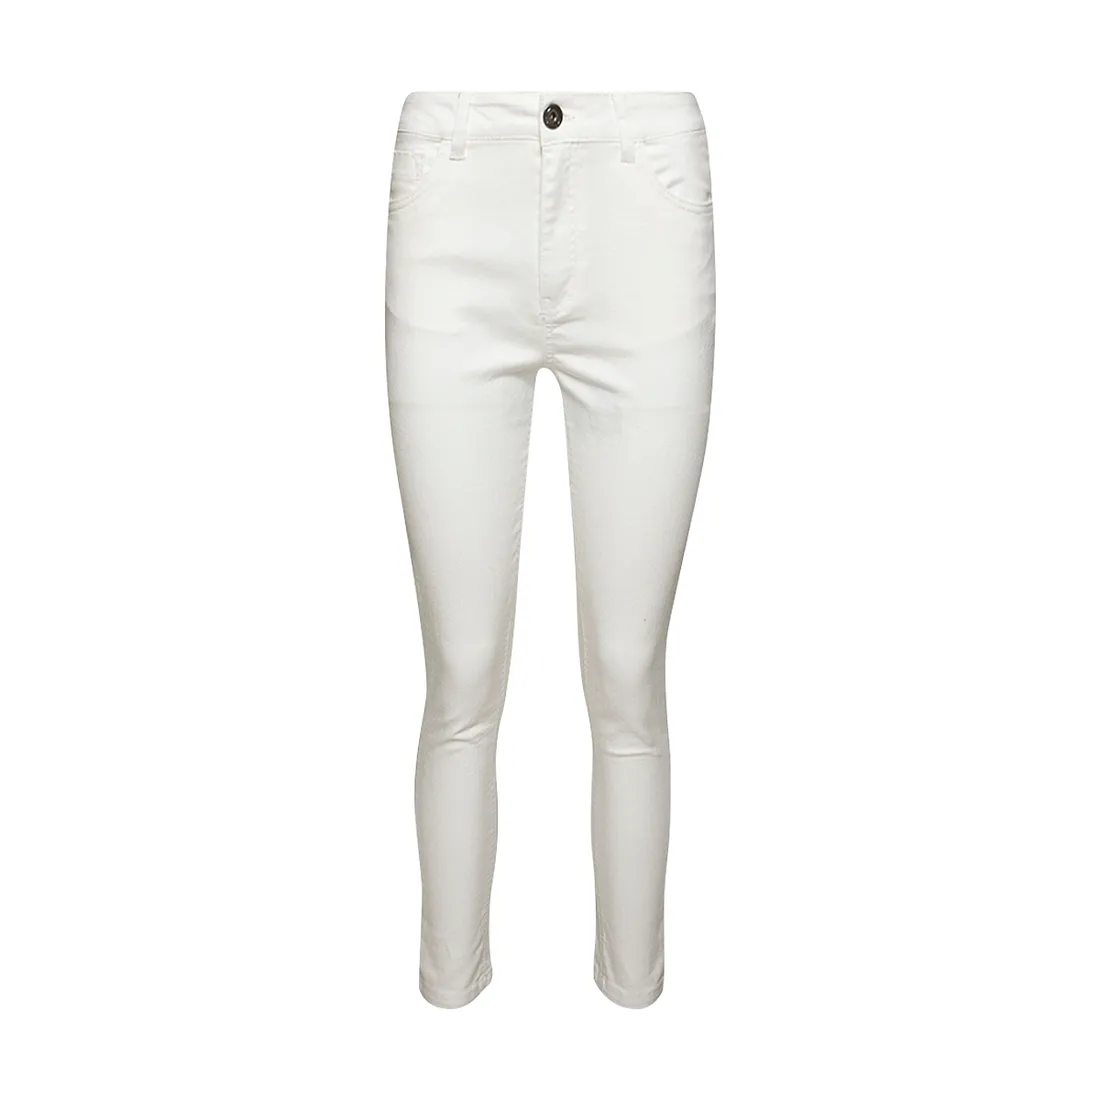 High rise skinny jeans white - Women's Skinny Denim Jeans | Ackermans